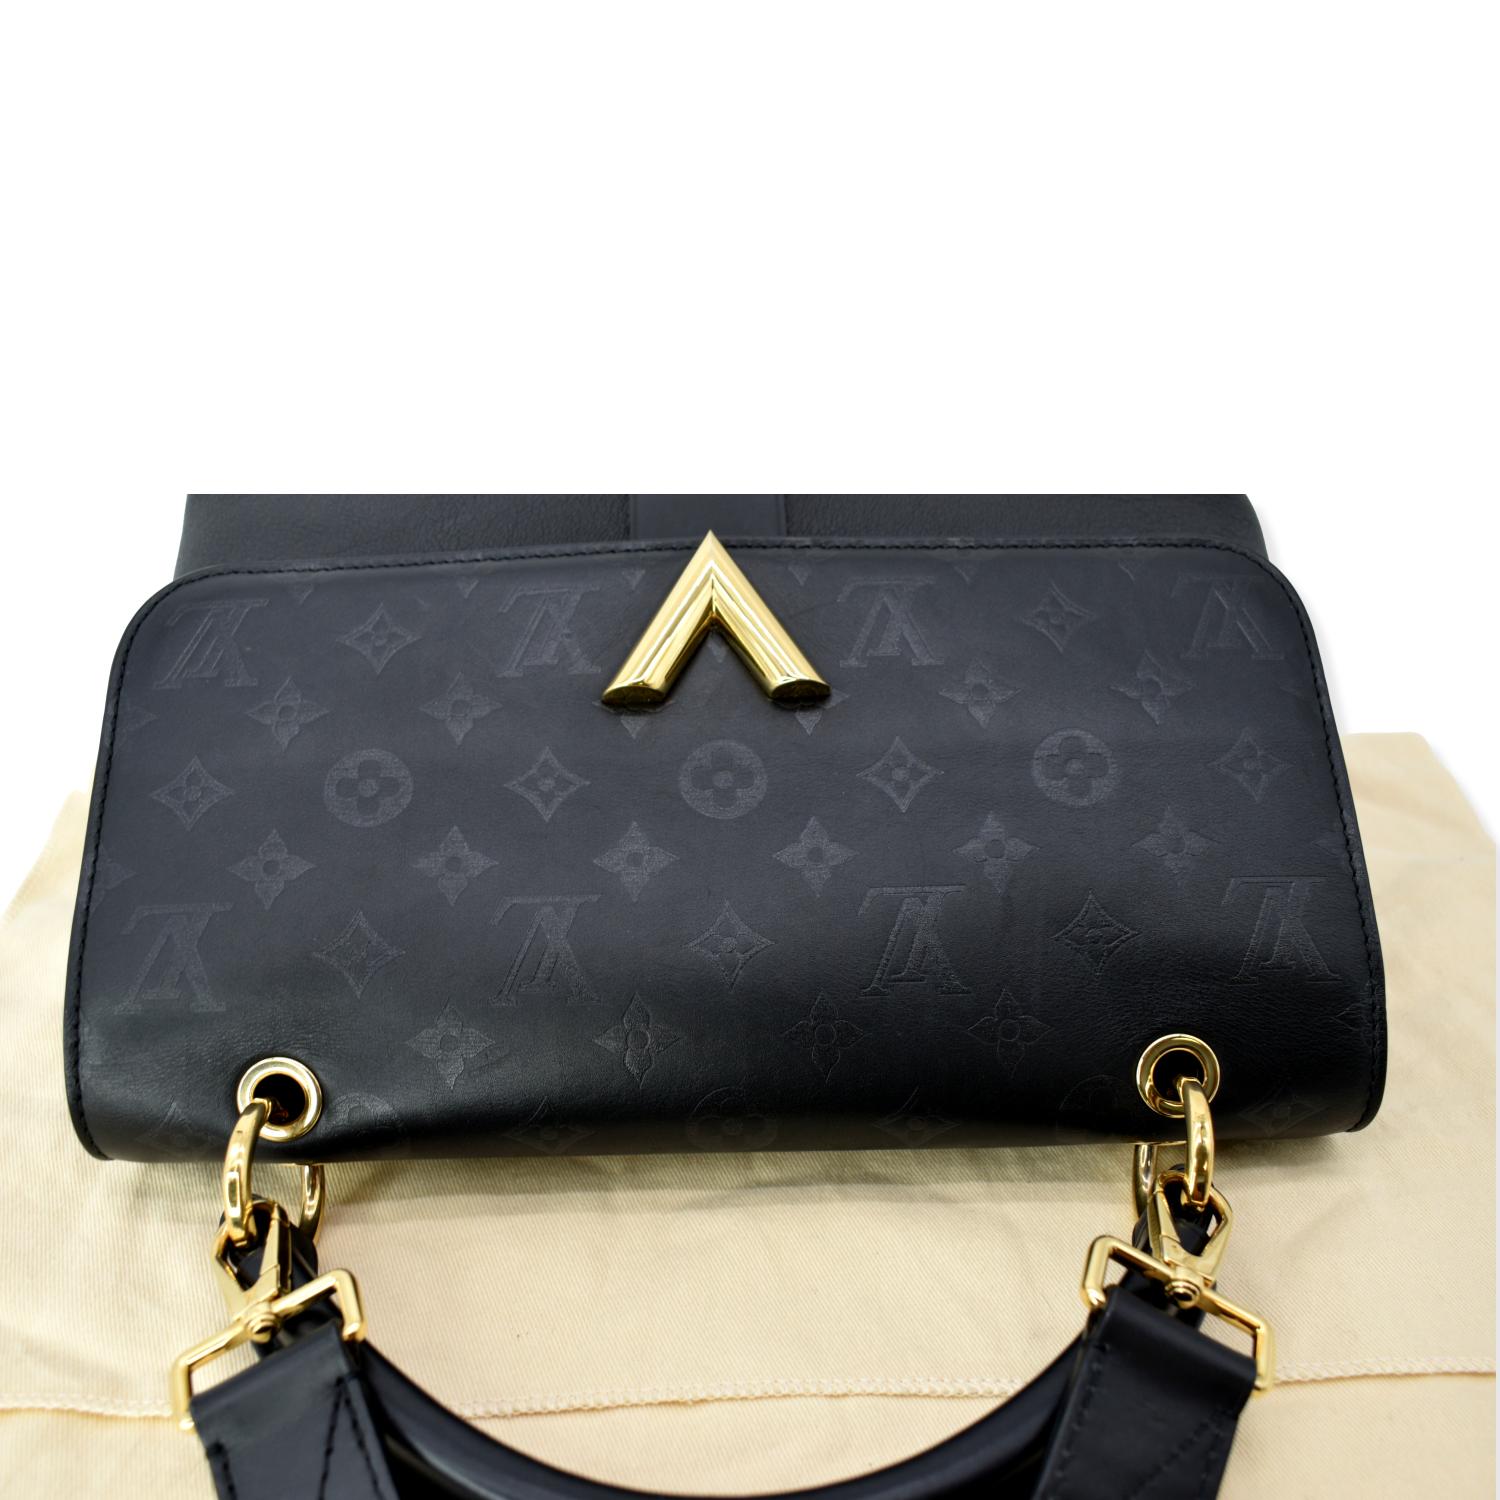 Louis Vuitton Black Leather Handbags & Purses for Women